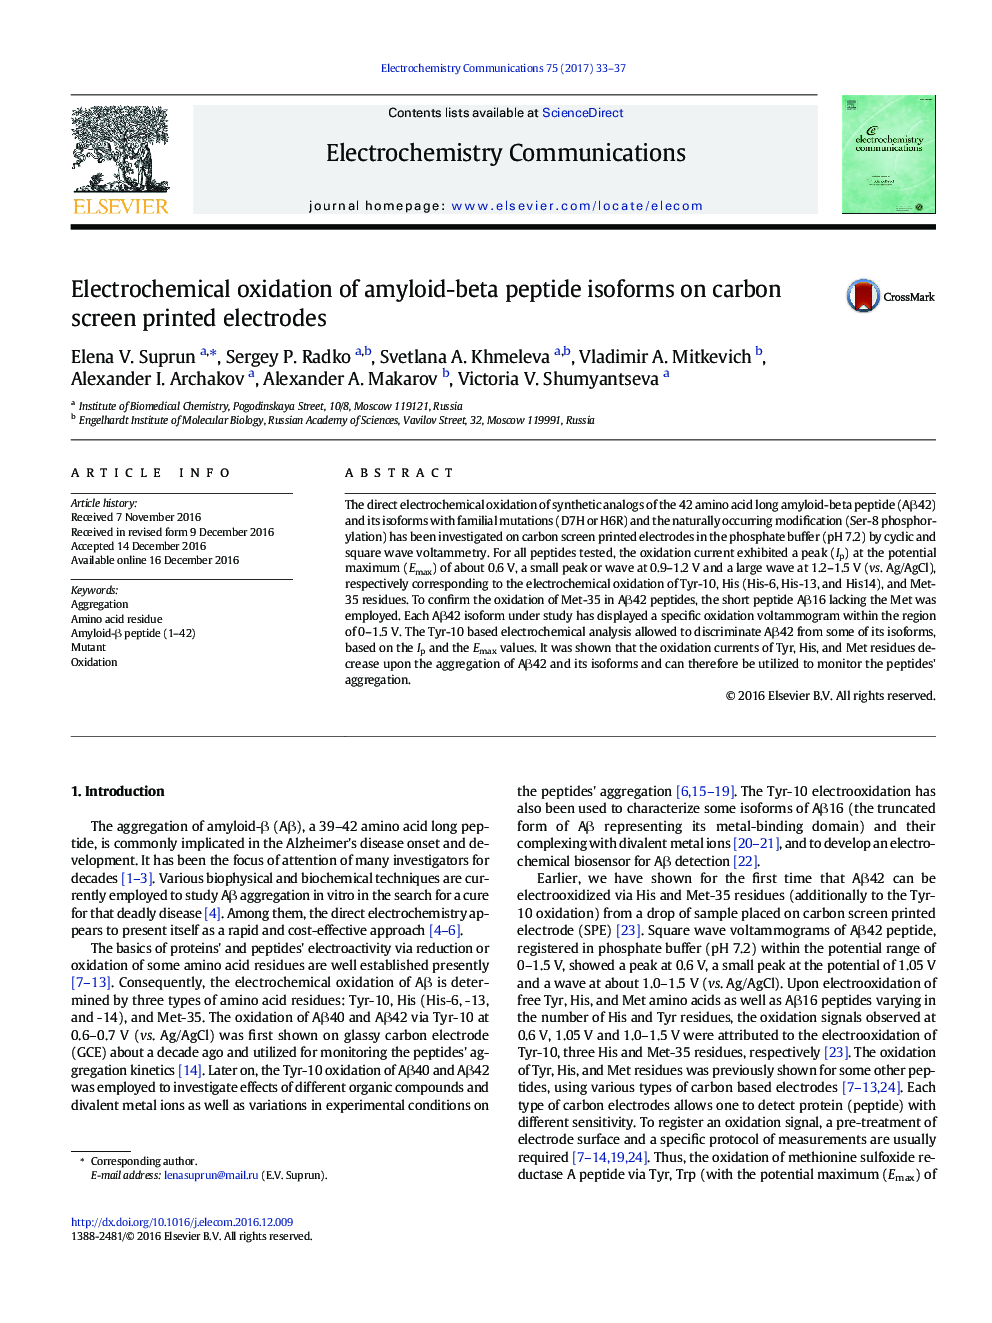 اکسیداسیون الکتروشیمیایی ایزوفرم های آمیلوئیدی بتا پپتیدی روی الکترود های چاپ شده روی کربن